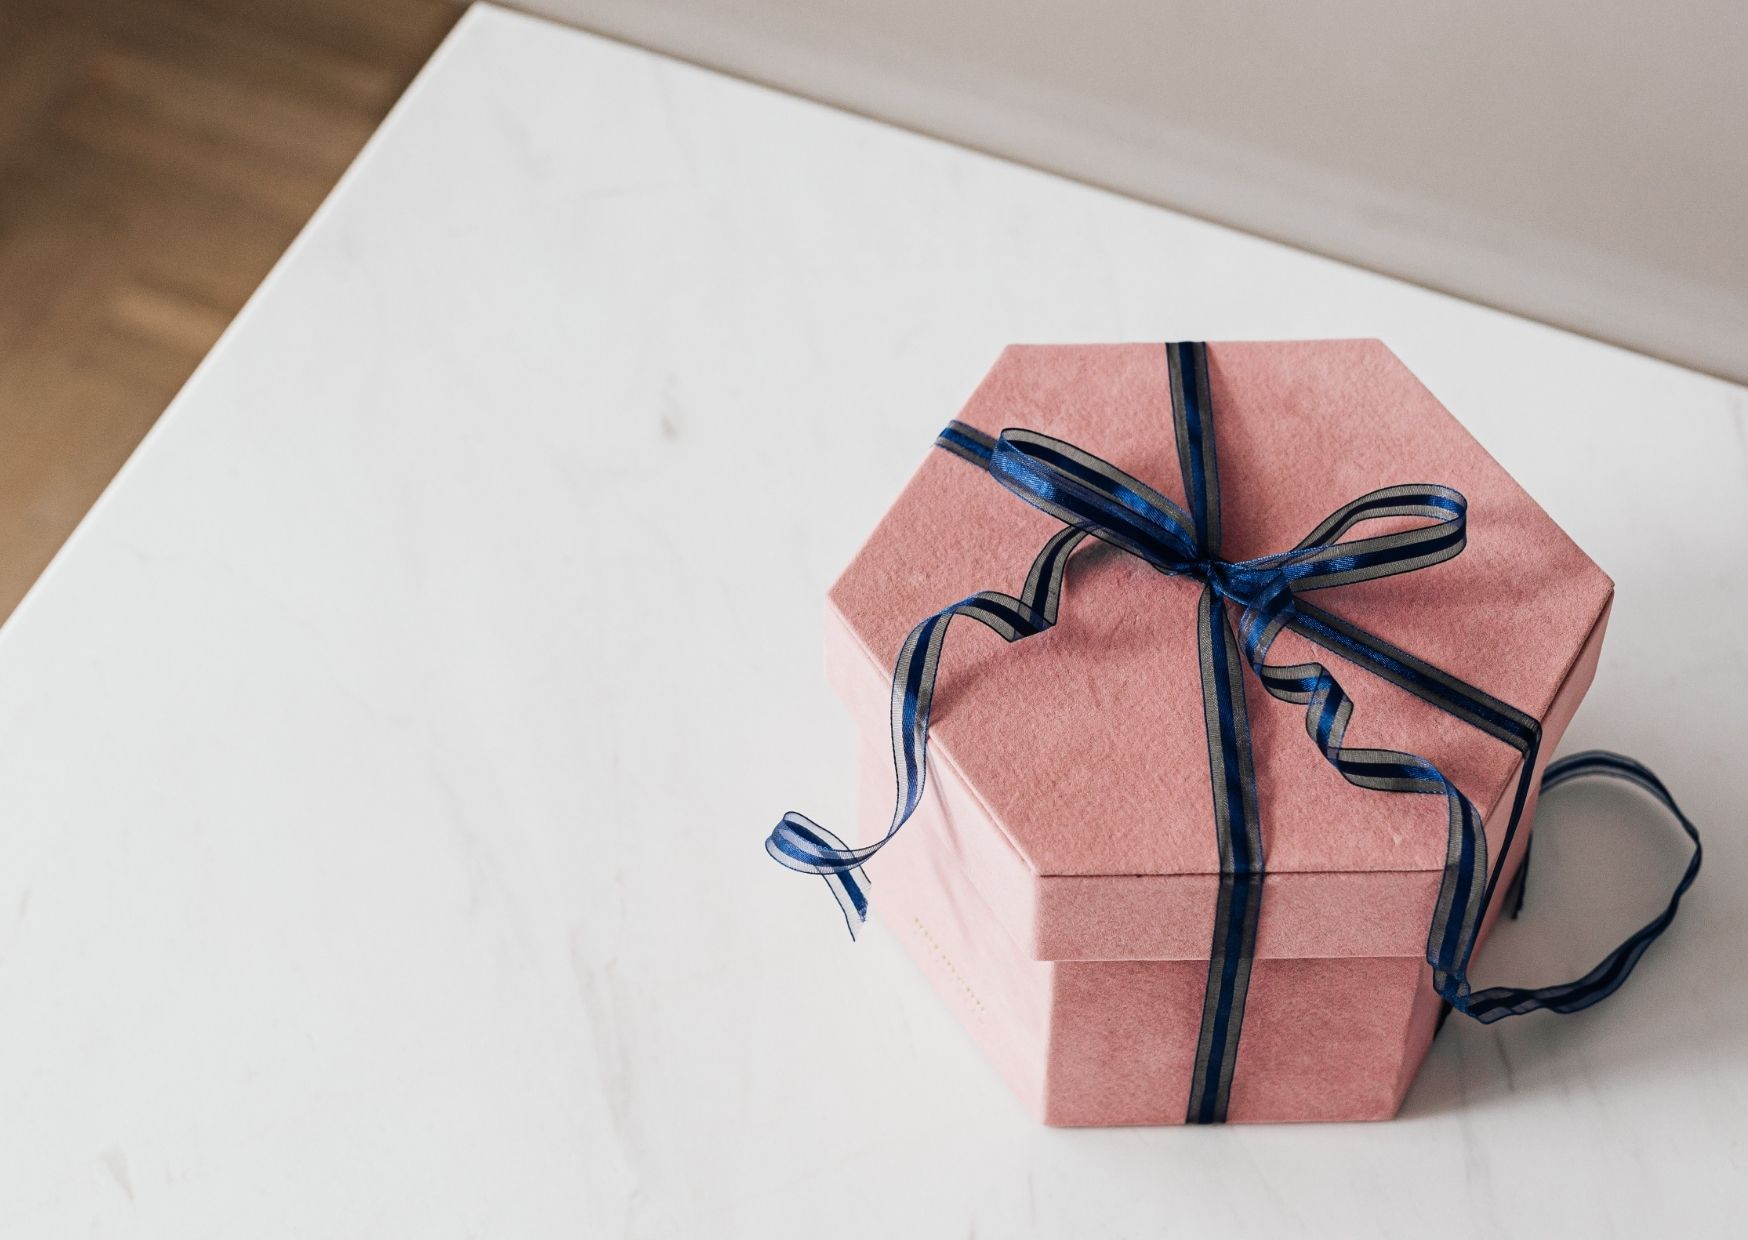 Geschenkidee für Euren Schatz: kleine Geschenke zum Hochzeitstag